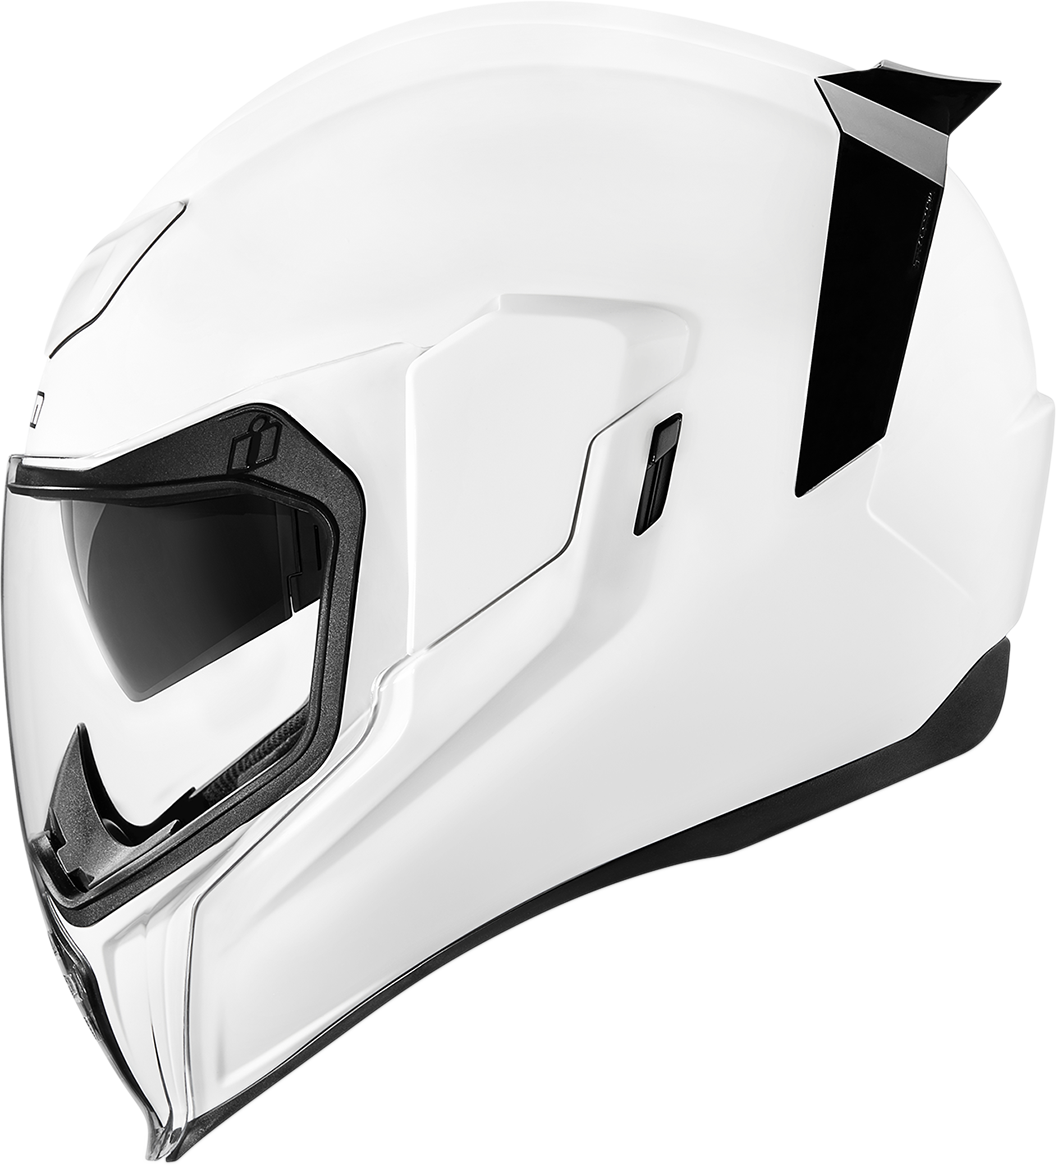 ICON Airflite™ Helmet - Gloss - White - XL 0101-10865